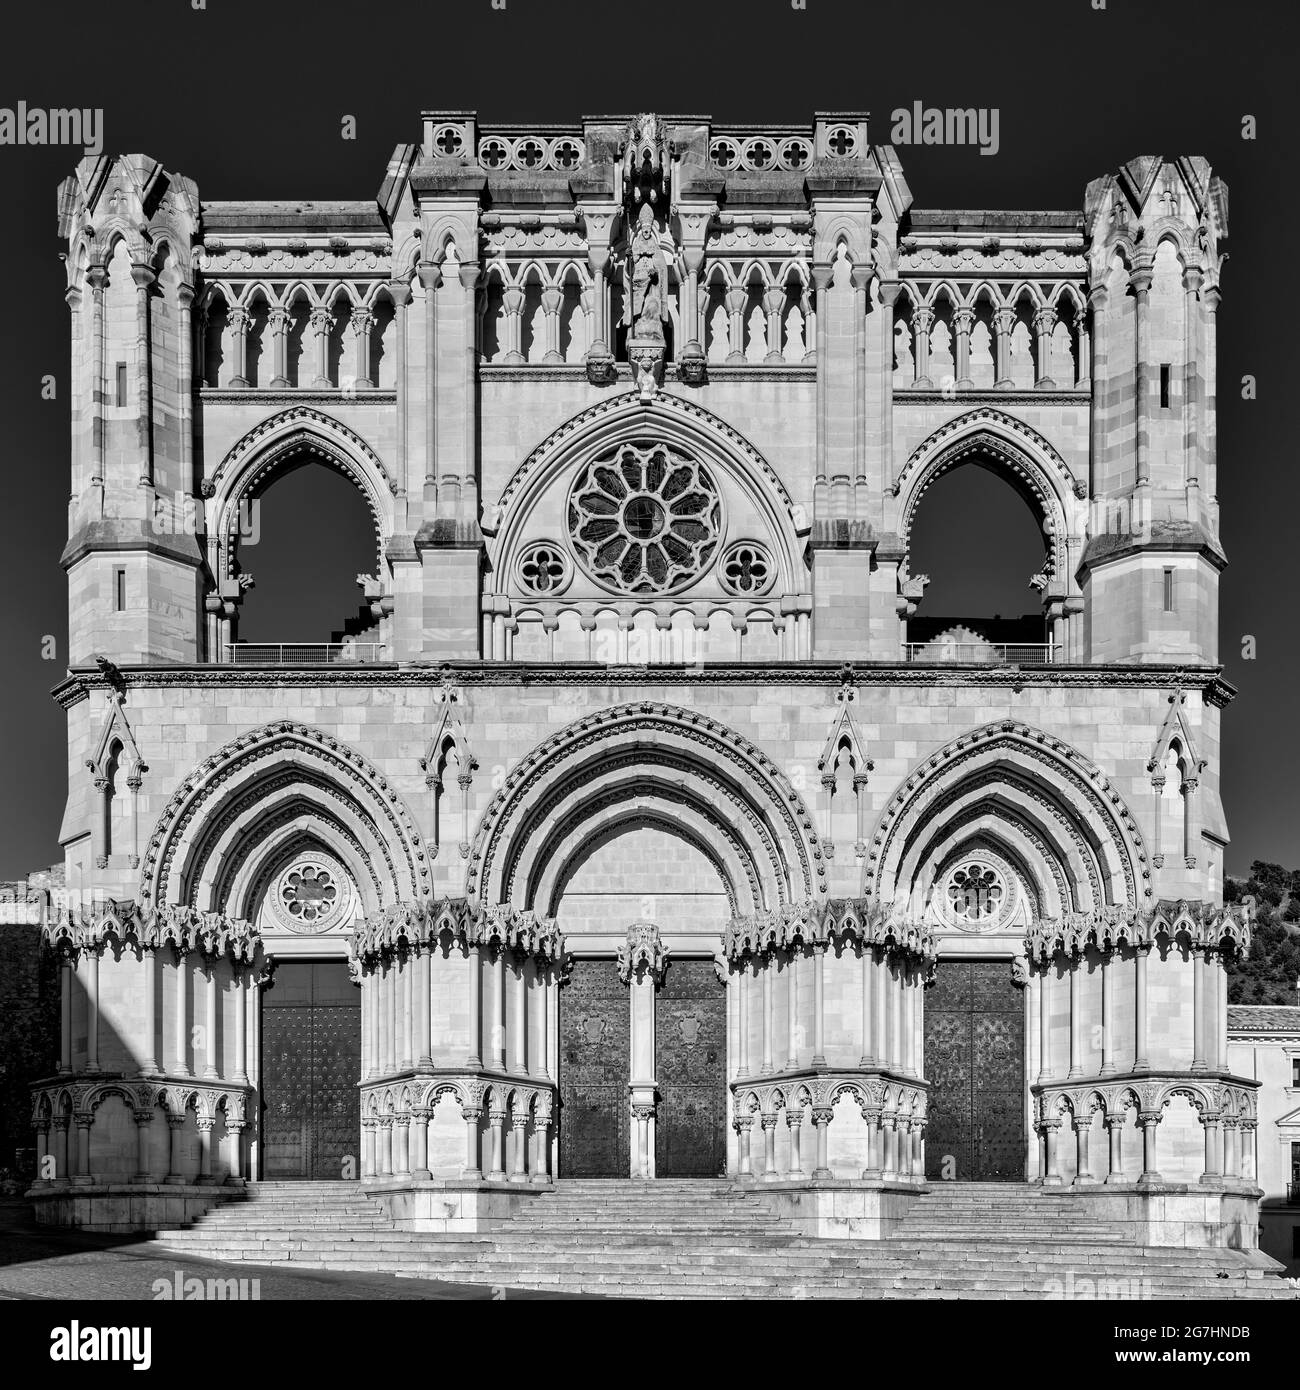 Façade de la cathédrale de Santa María de Gracia du XIIe siècle sur la Plaza Mayor de la ville de Cuenca, Castilla la Mancha, Espagne, Europe. Banque D'Images